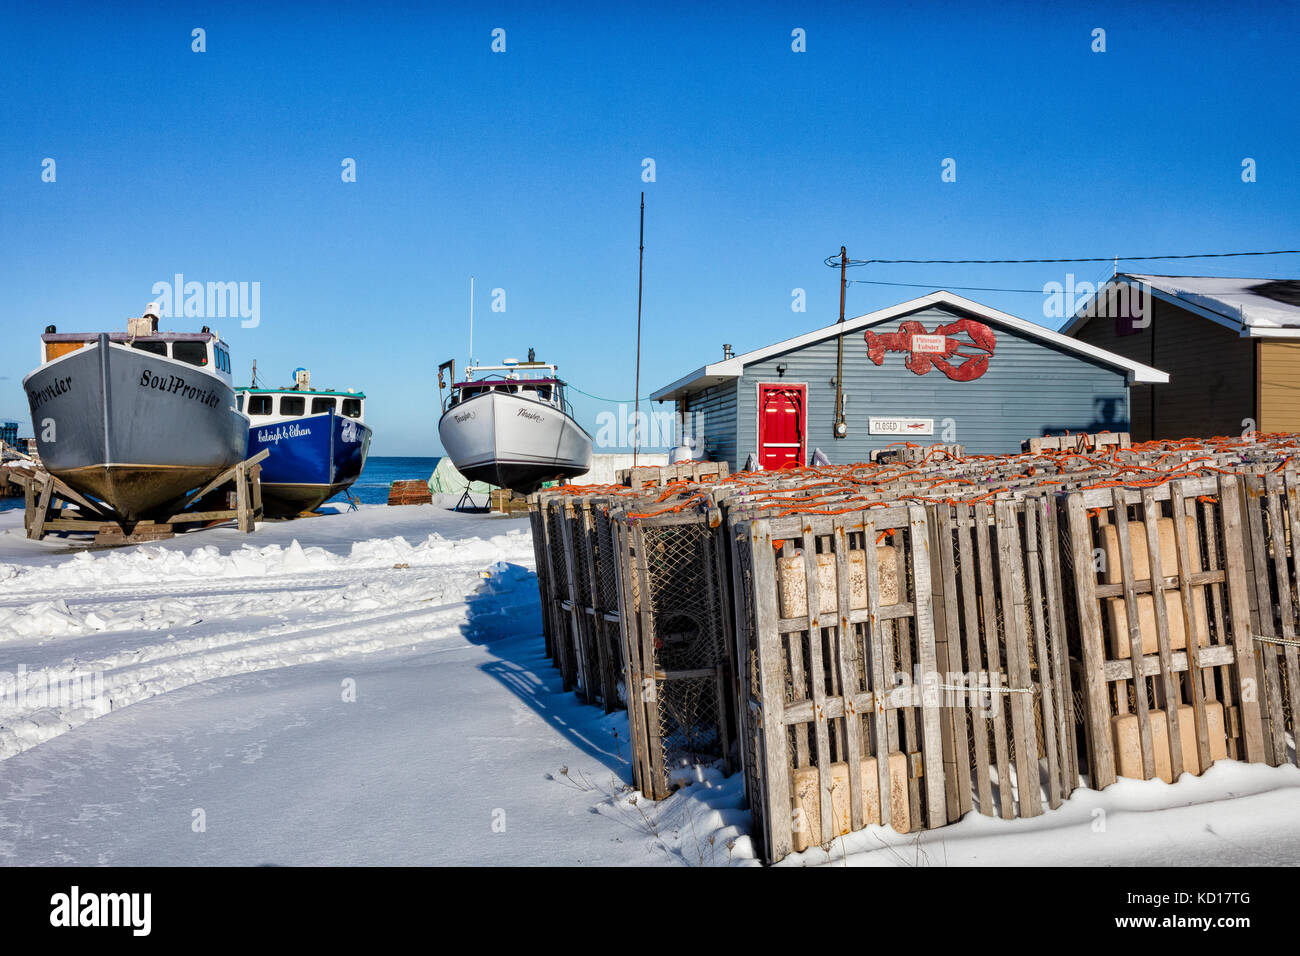 Les casiers à homard et bateau de pêche, Glace Bay Harbour, Cape Breton, Nova Scotia, canada Banque D'Images